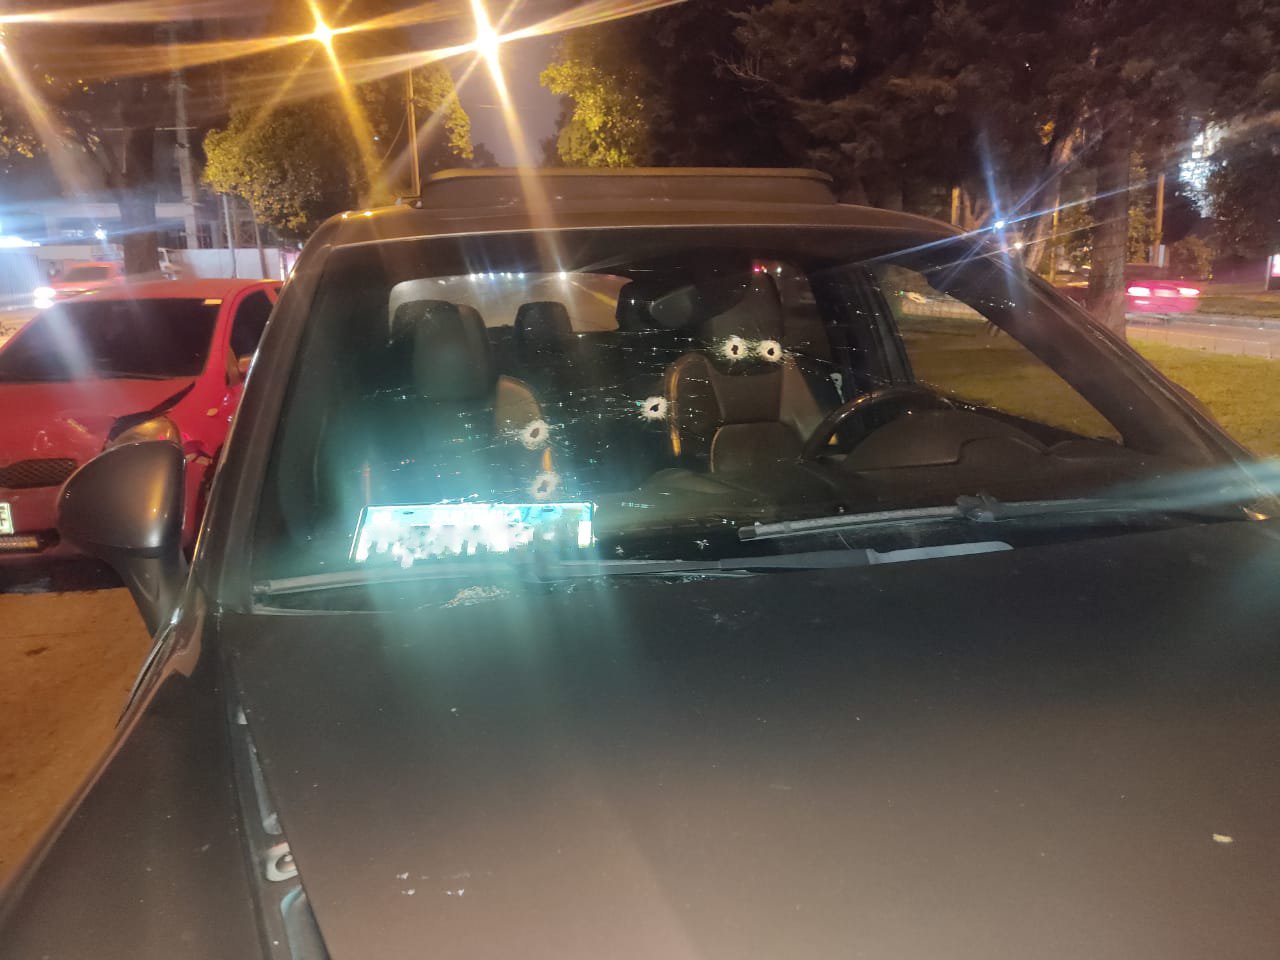 Balacera en la avenida reforma: se conocen más detalles del atentado contra un vehículo de lujo que fue abandonado 